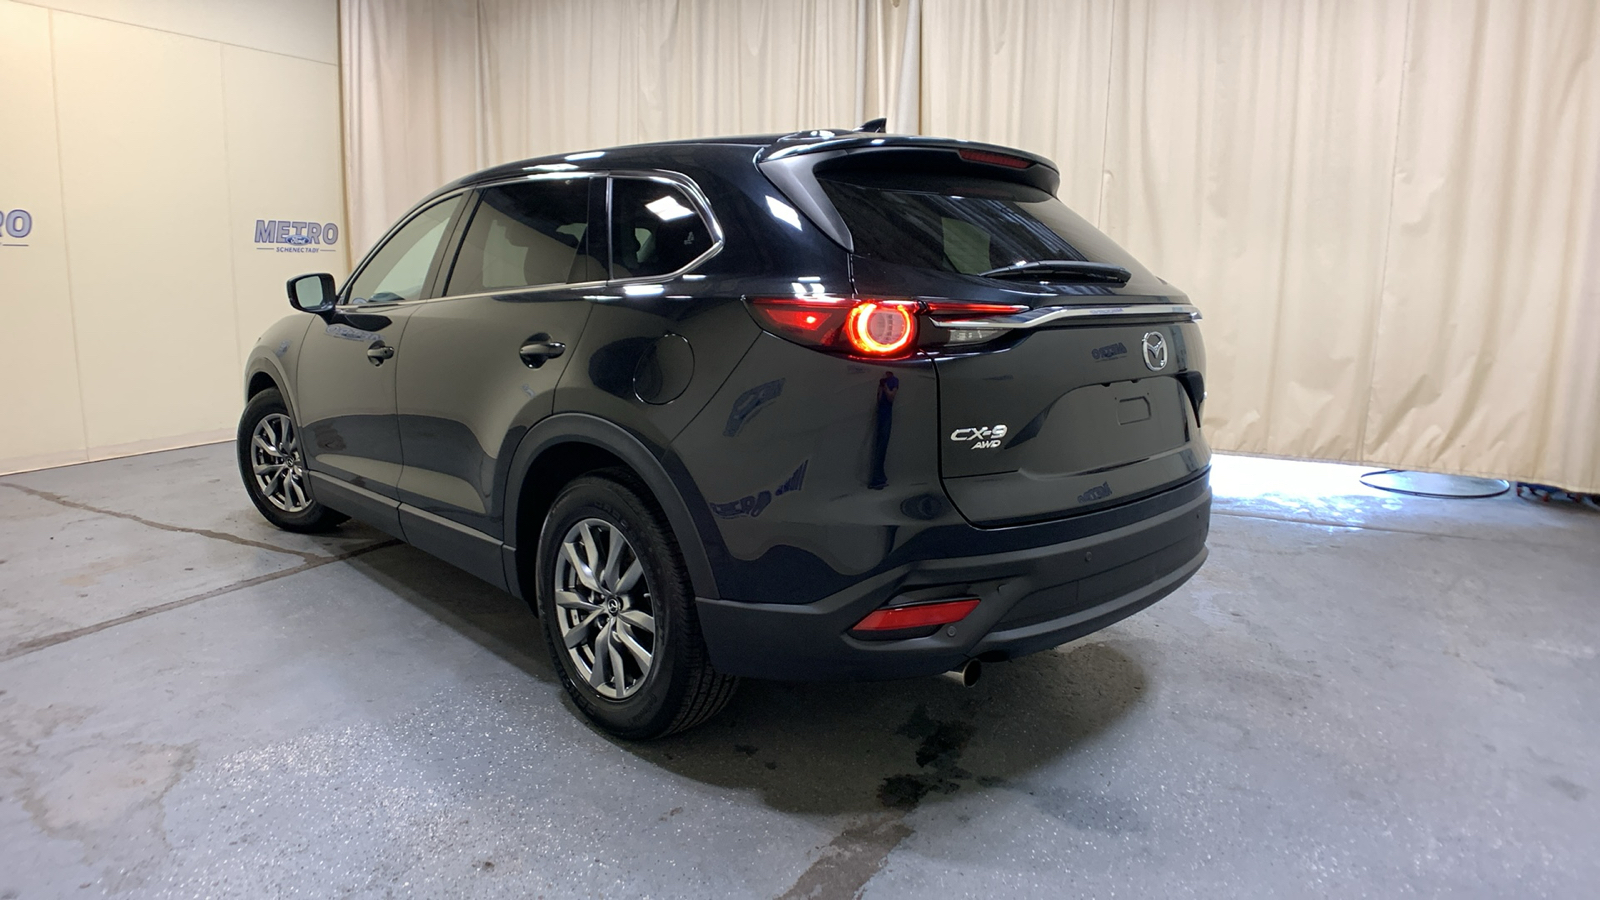 2018 Mazda CX-9 Touring 5